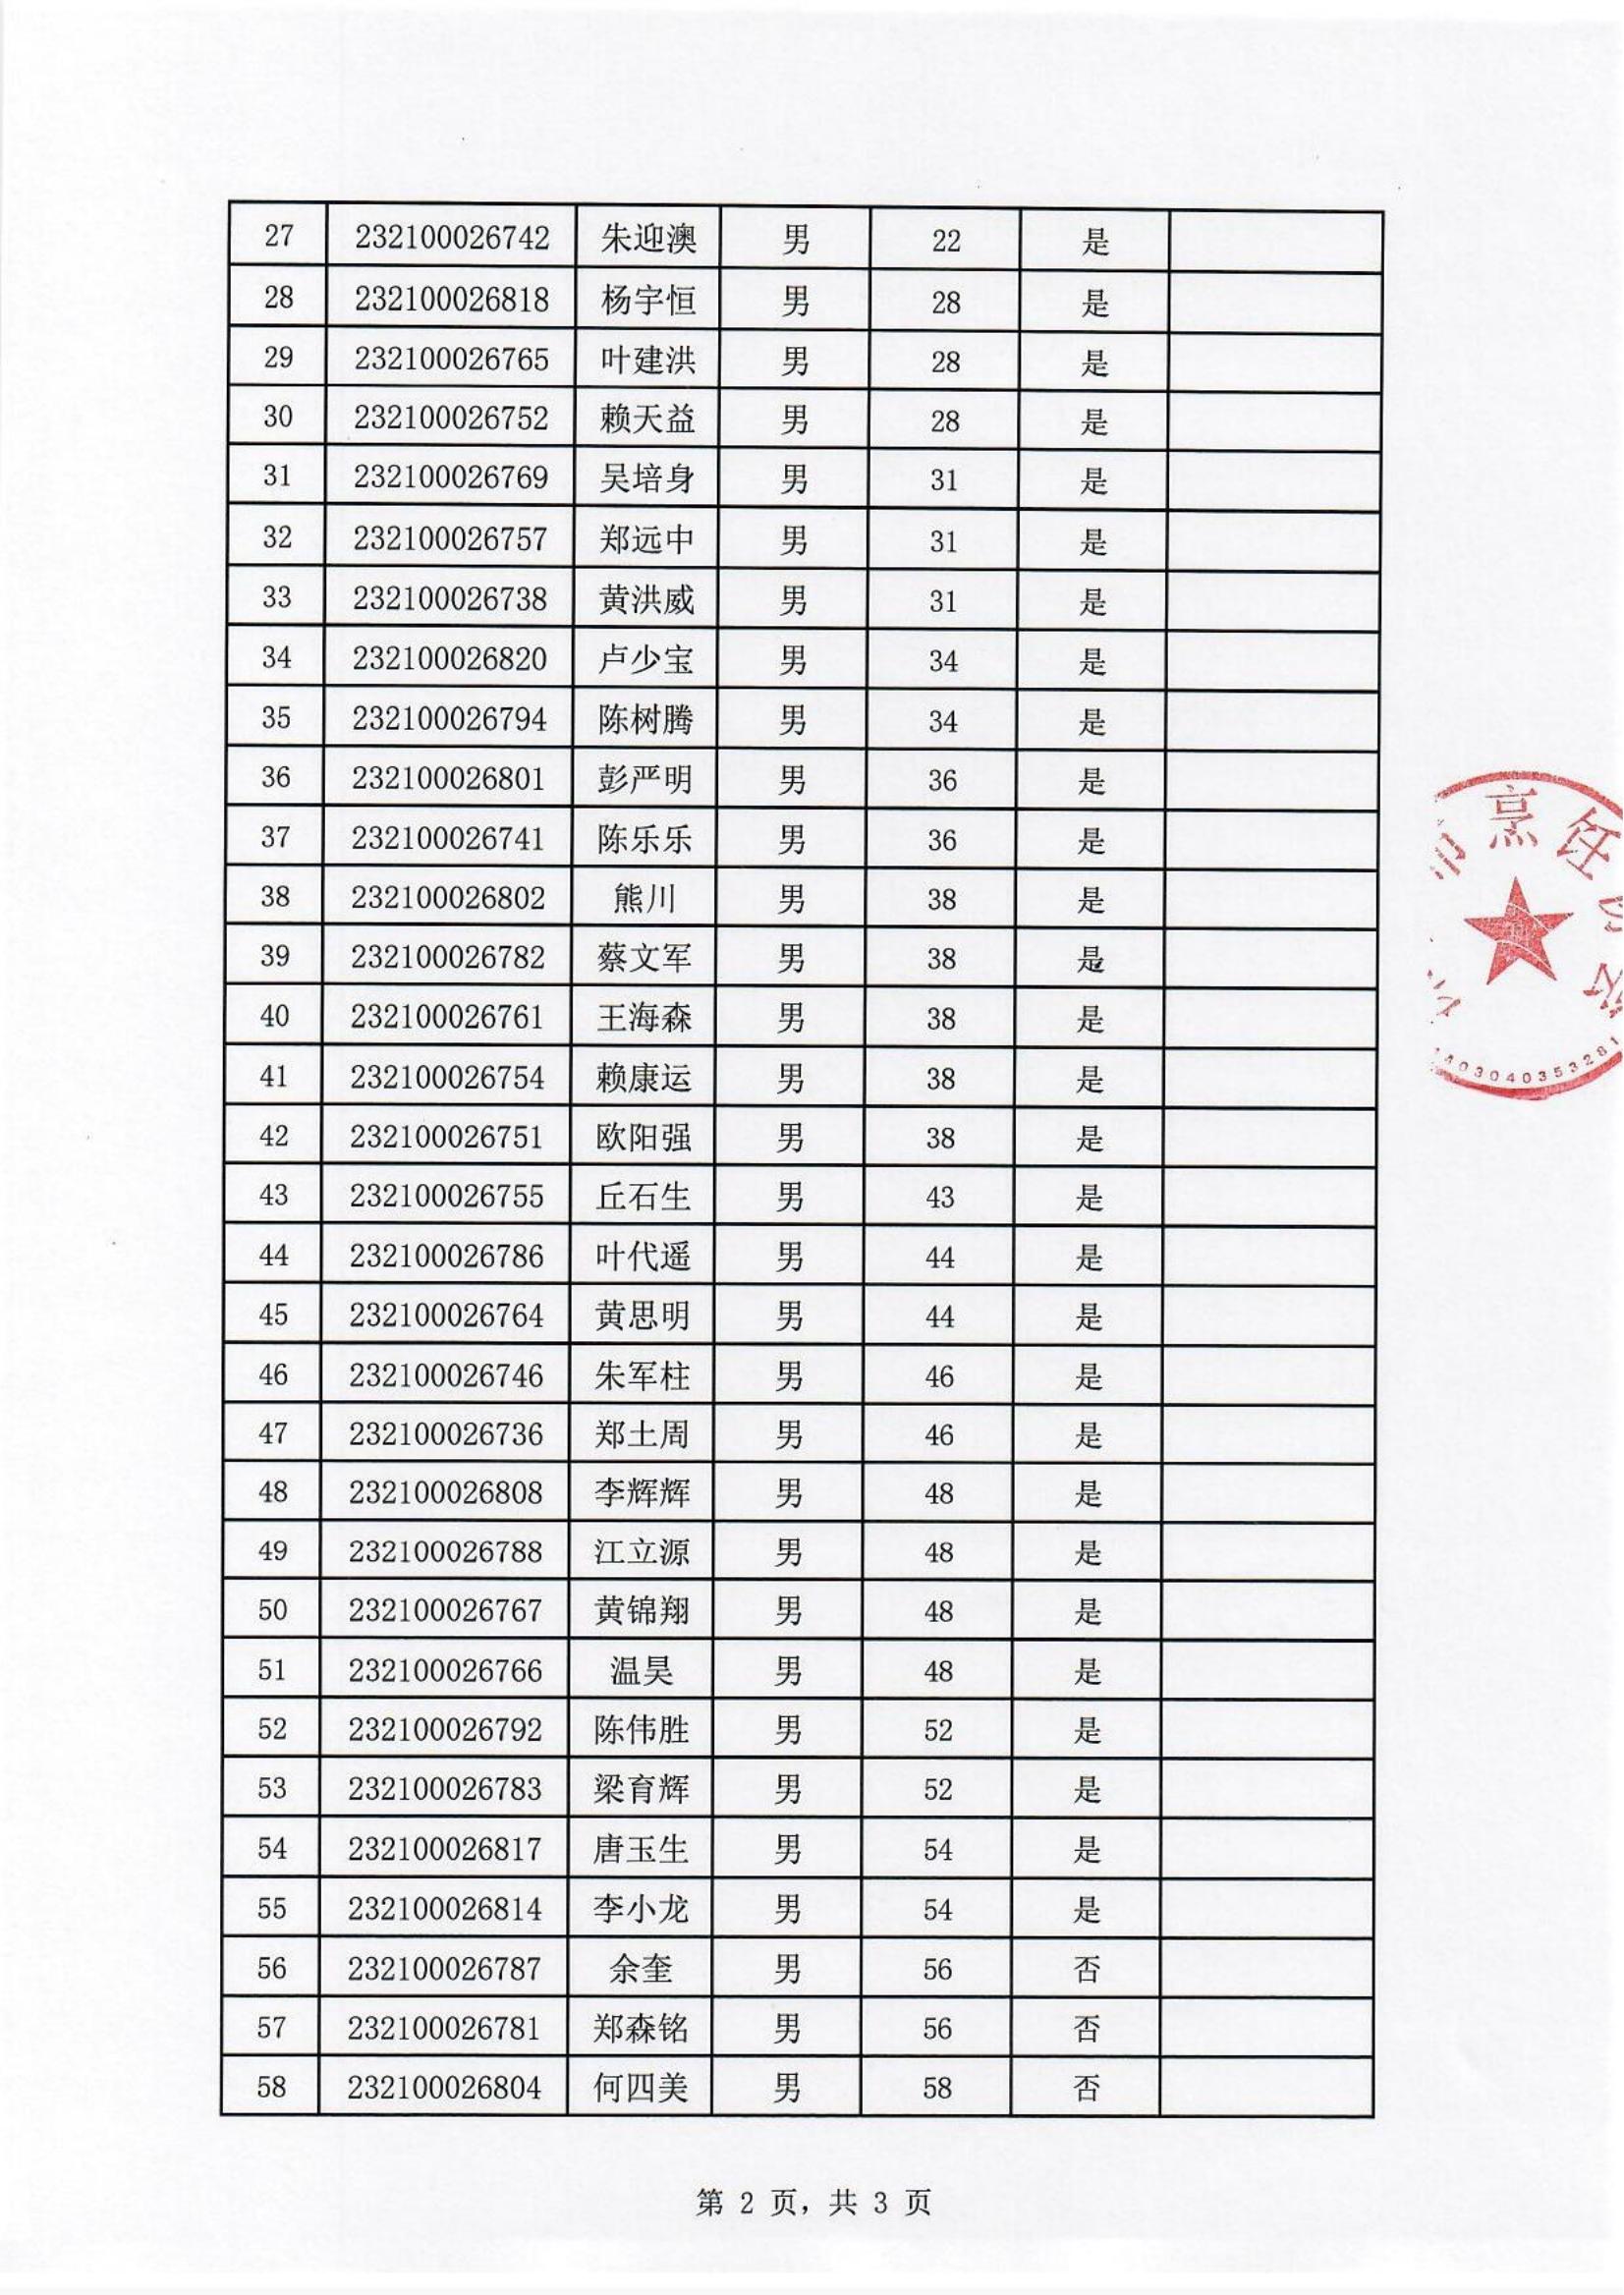 中式烹调职业技能竞赛初赛排名公布表_01.jpg